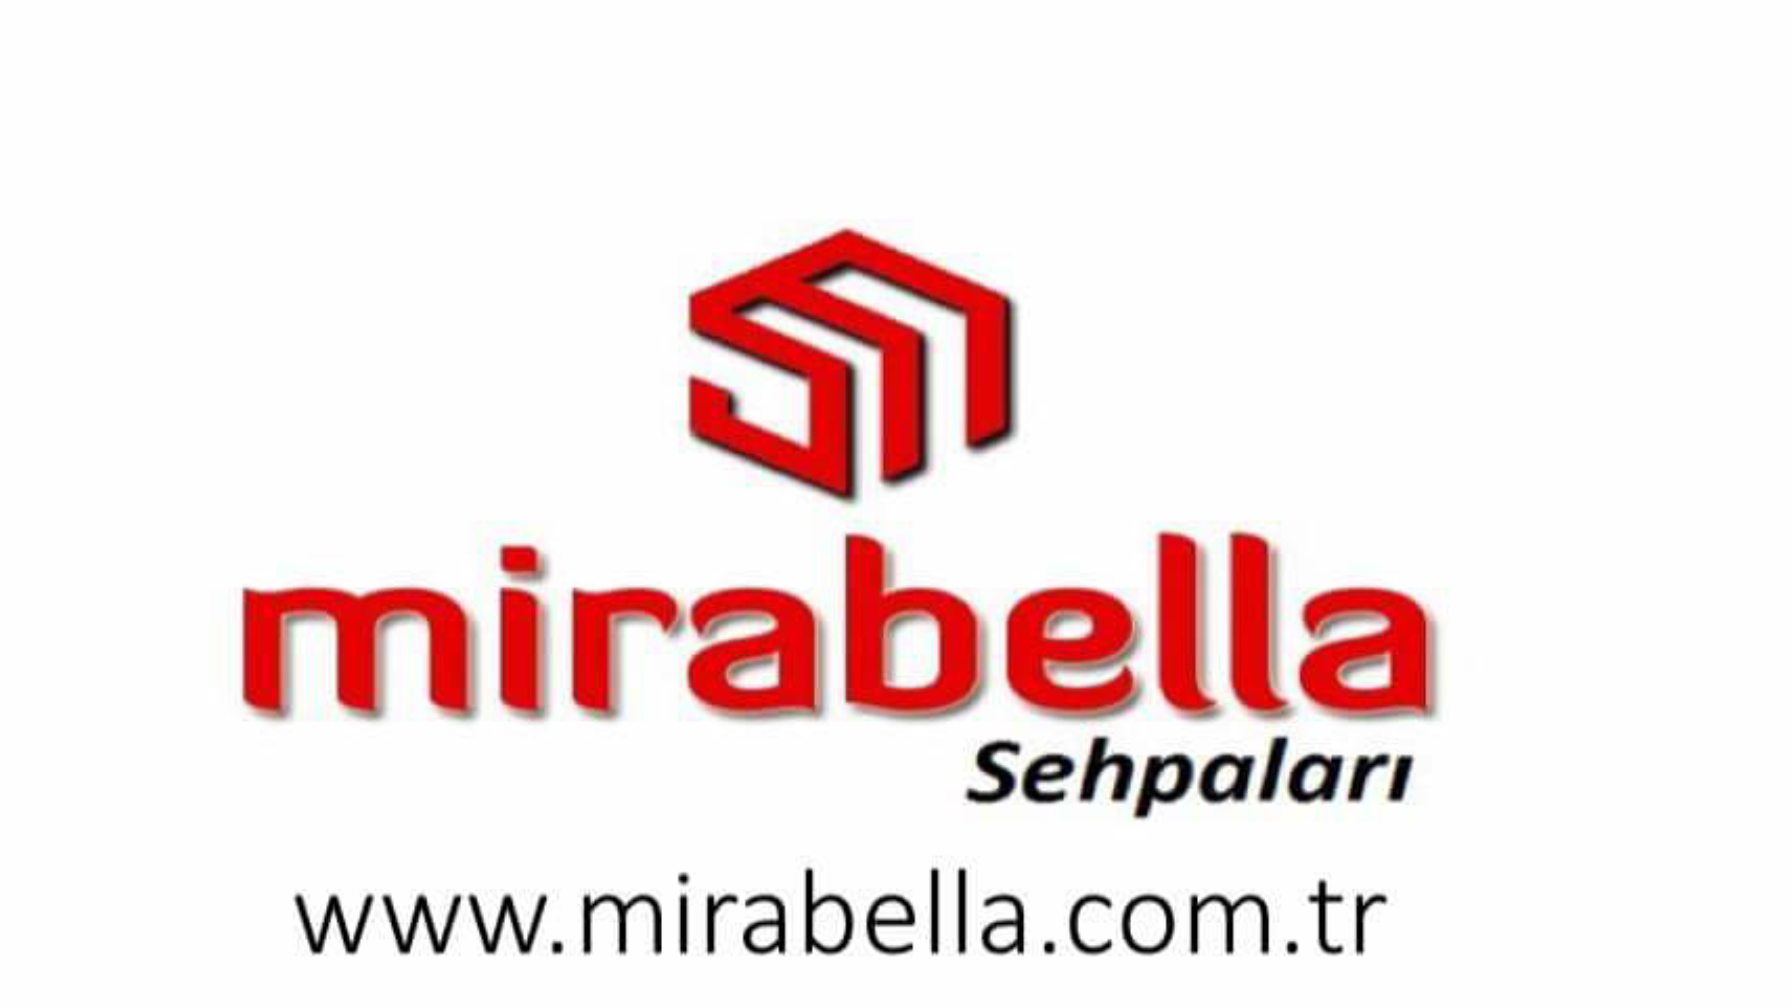 MirabellaSehpa